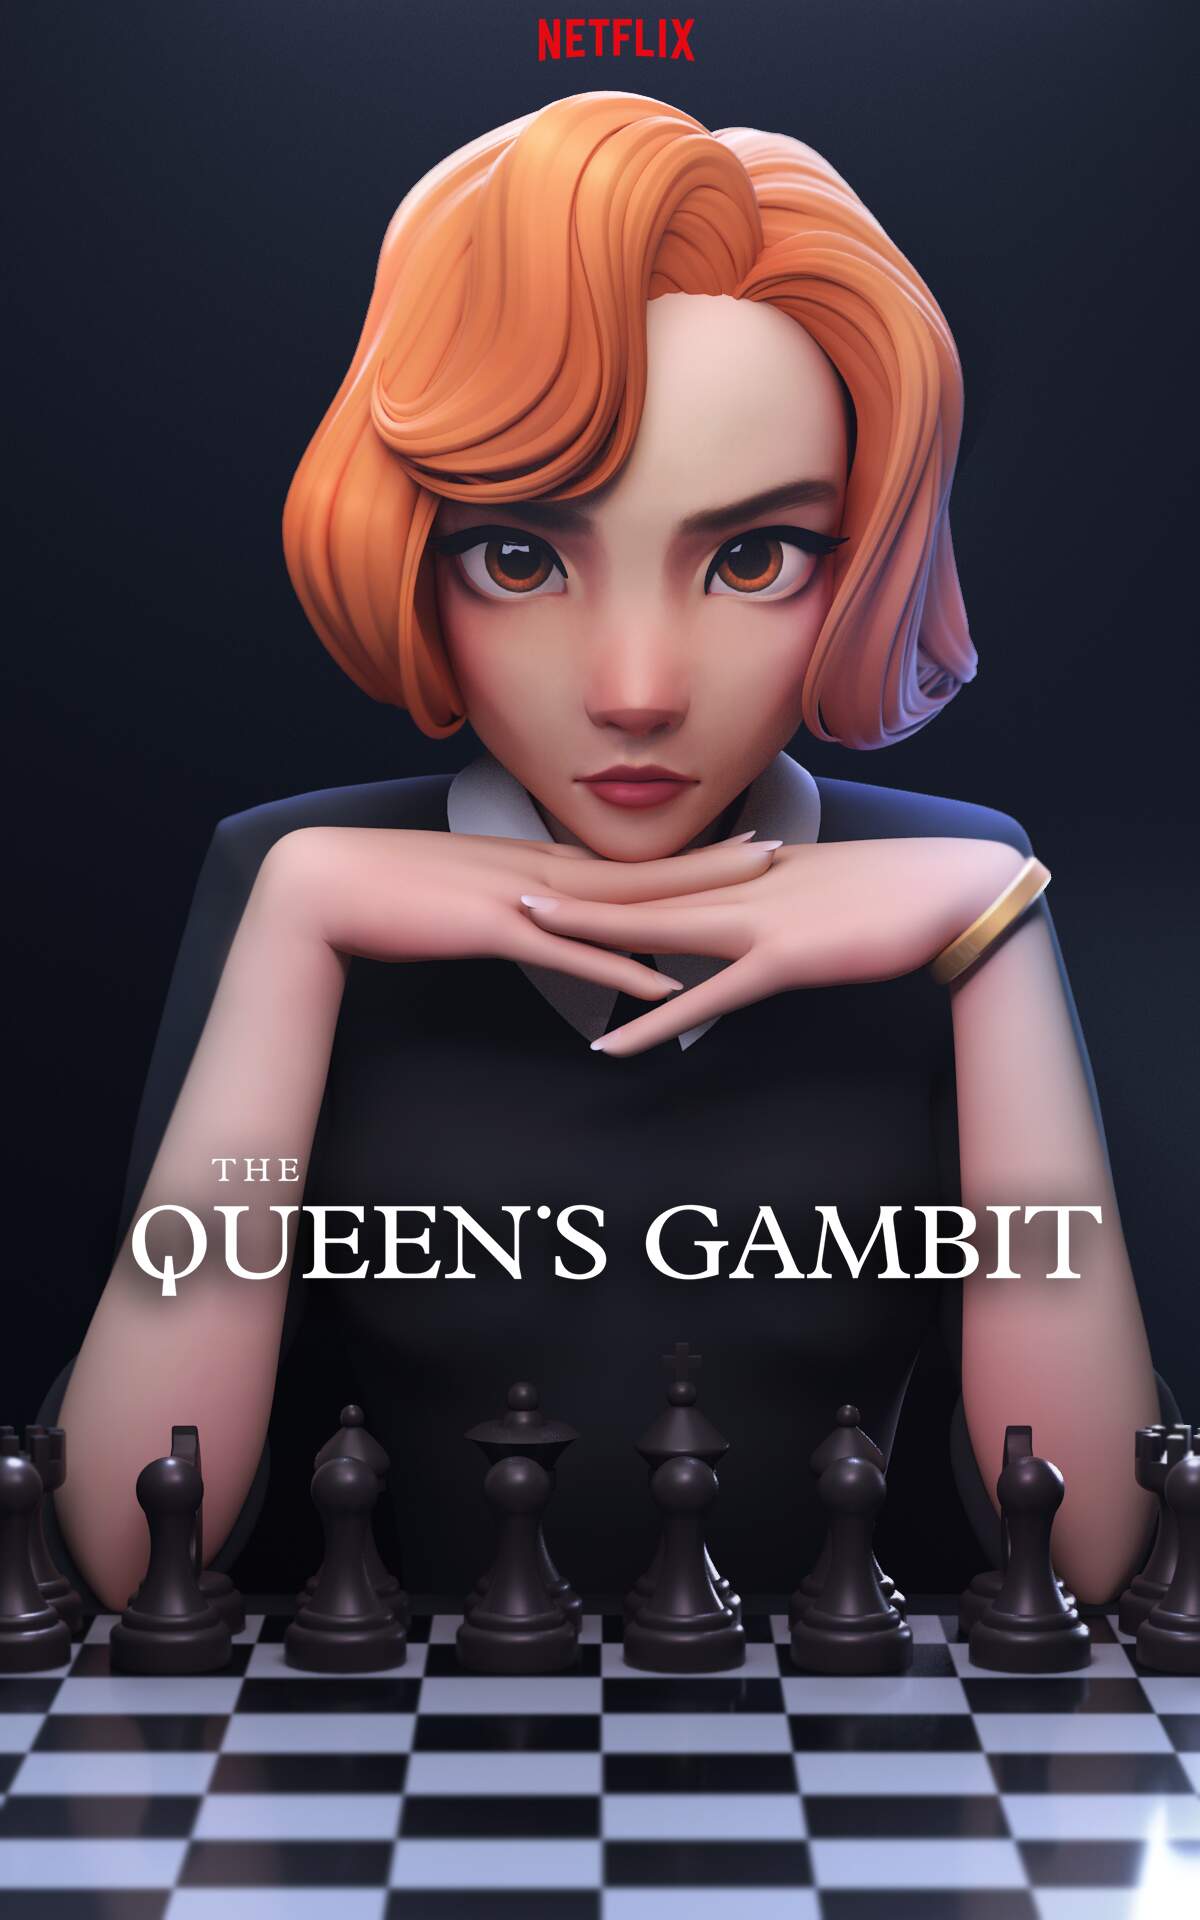 Queen's Gambit - Netflix on Behance